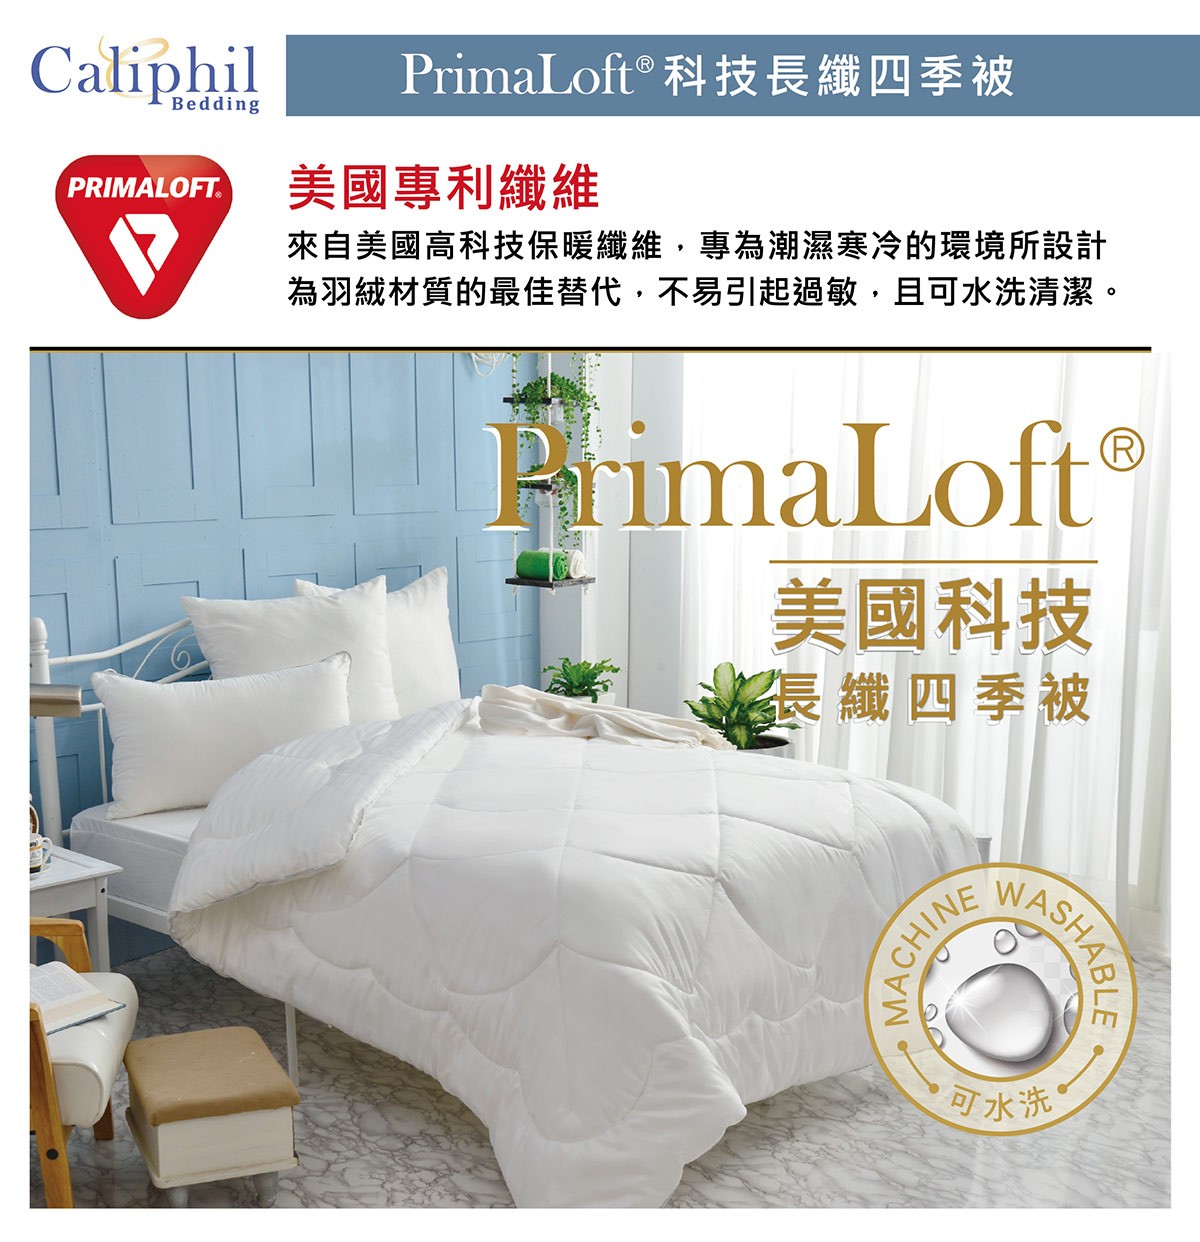 Caliphil PrimaLoft® 單人科技長纖四季被 150 X 210 公分